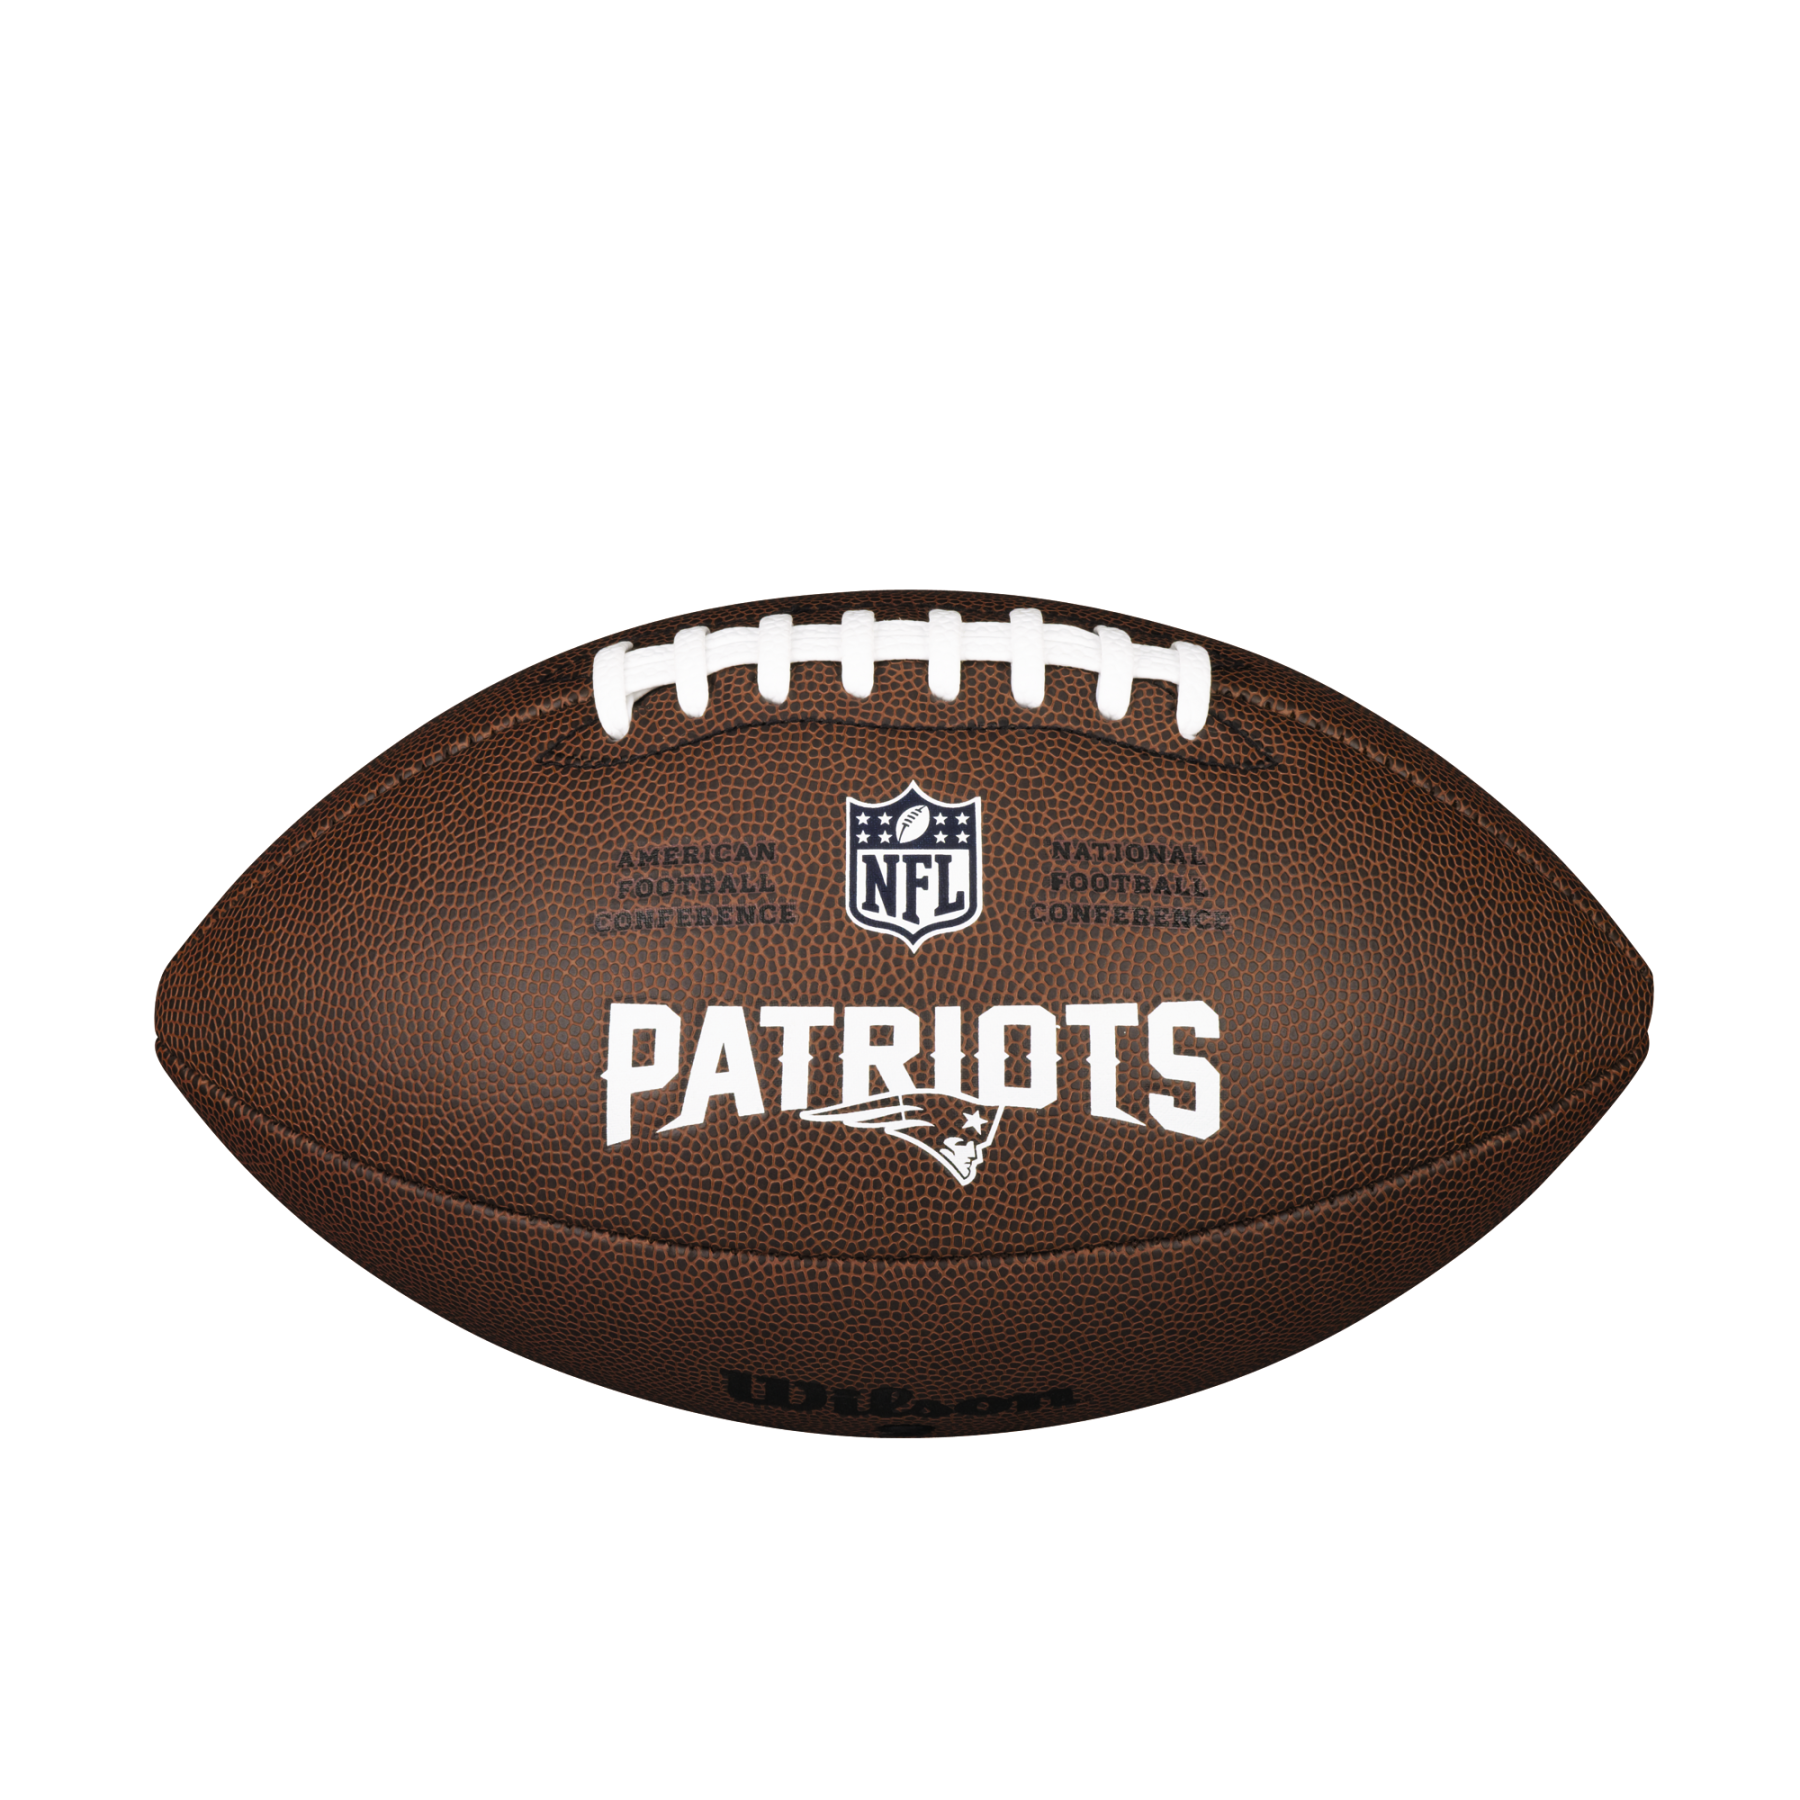 Bola Wilson Patriots NFL com licença